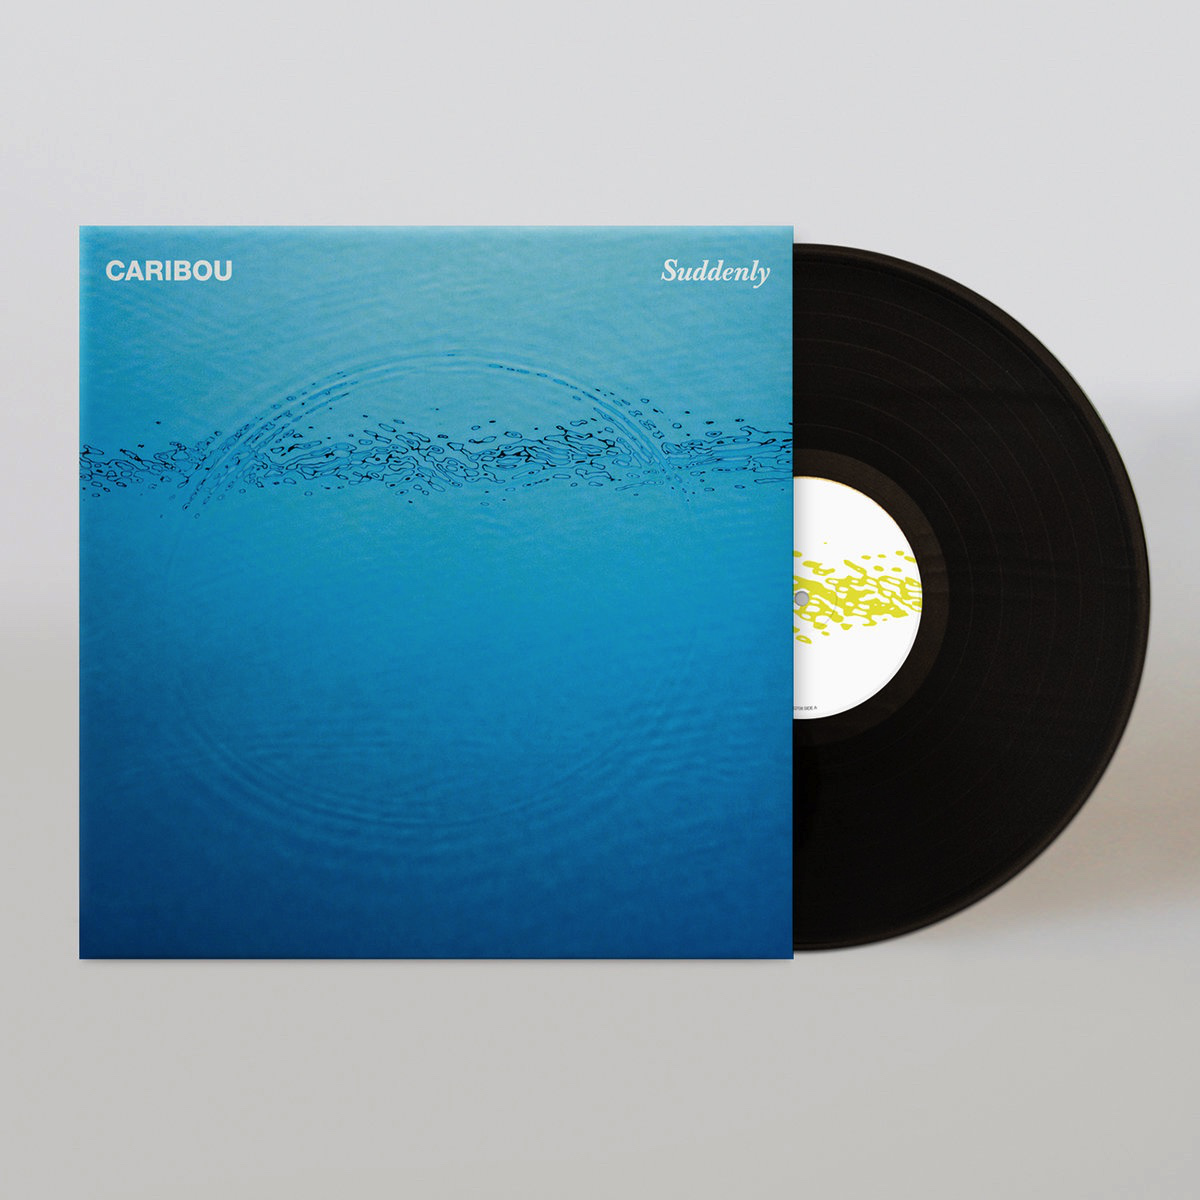 Caribou's recent album, 'Suddenly'